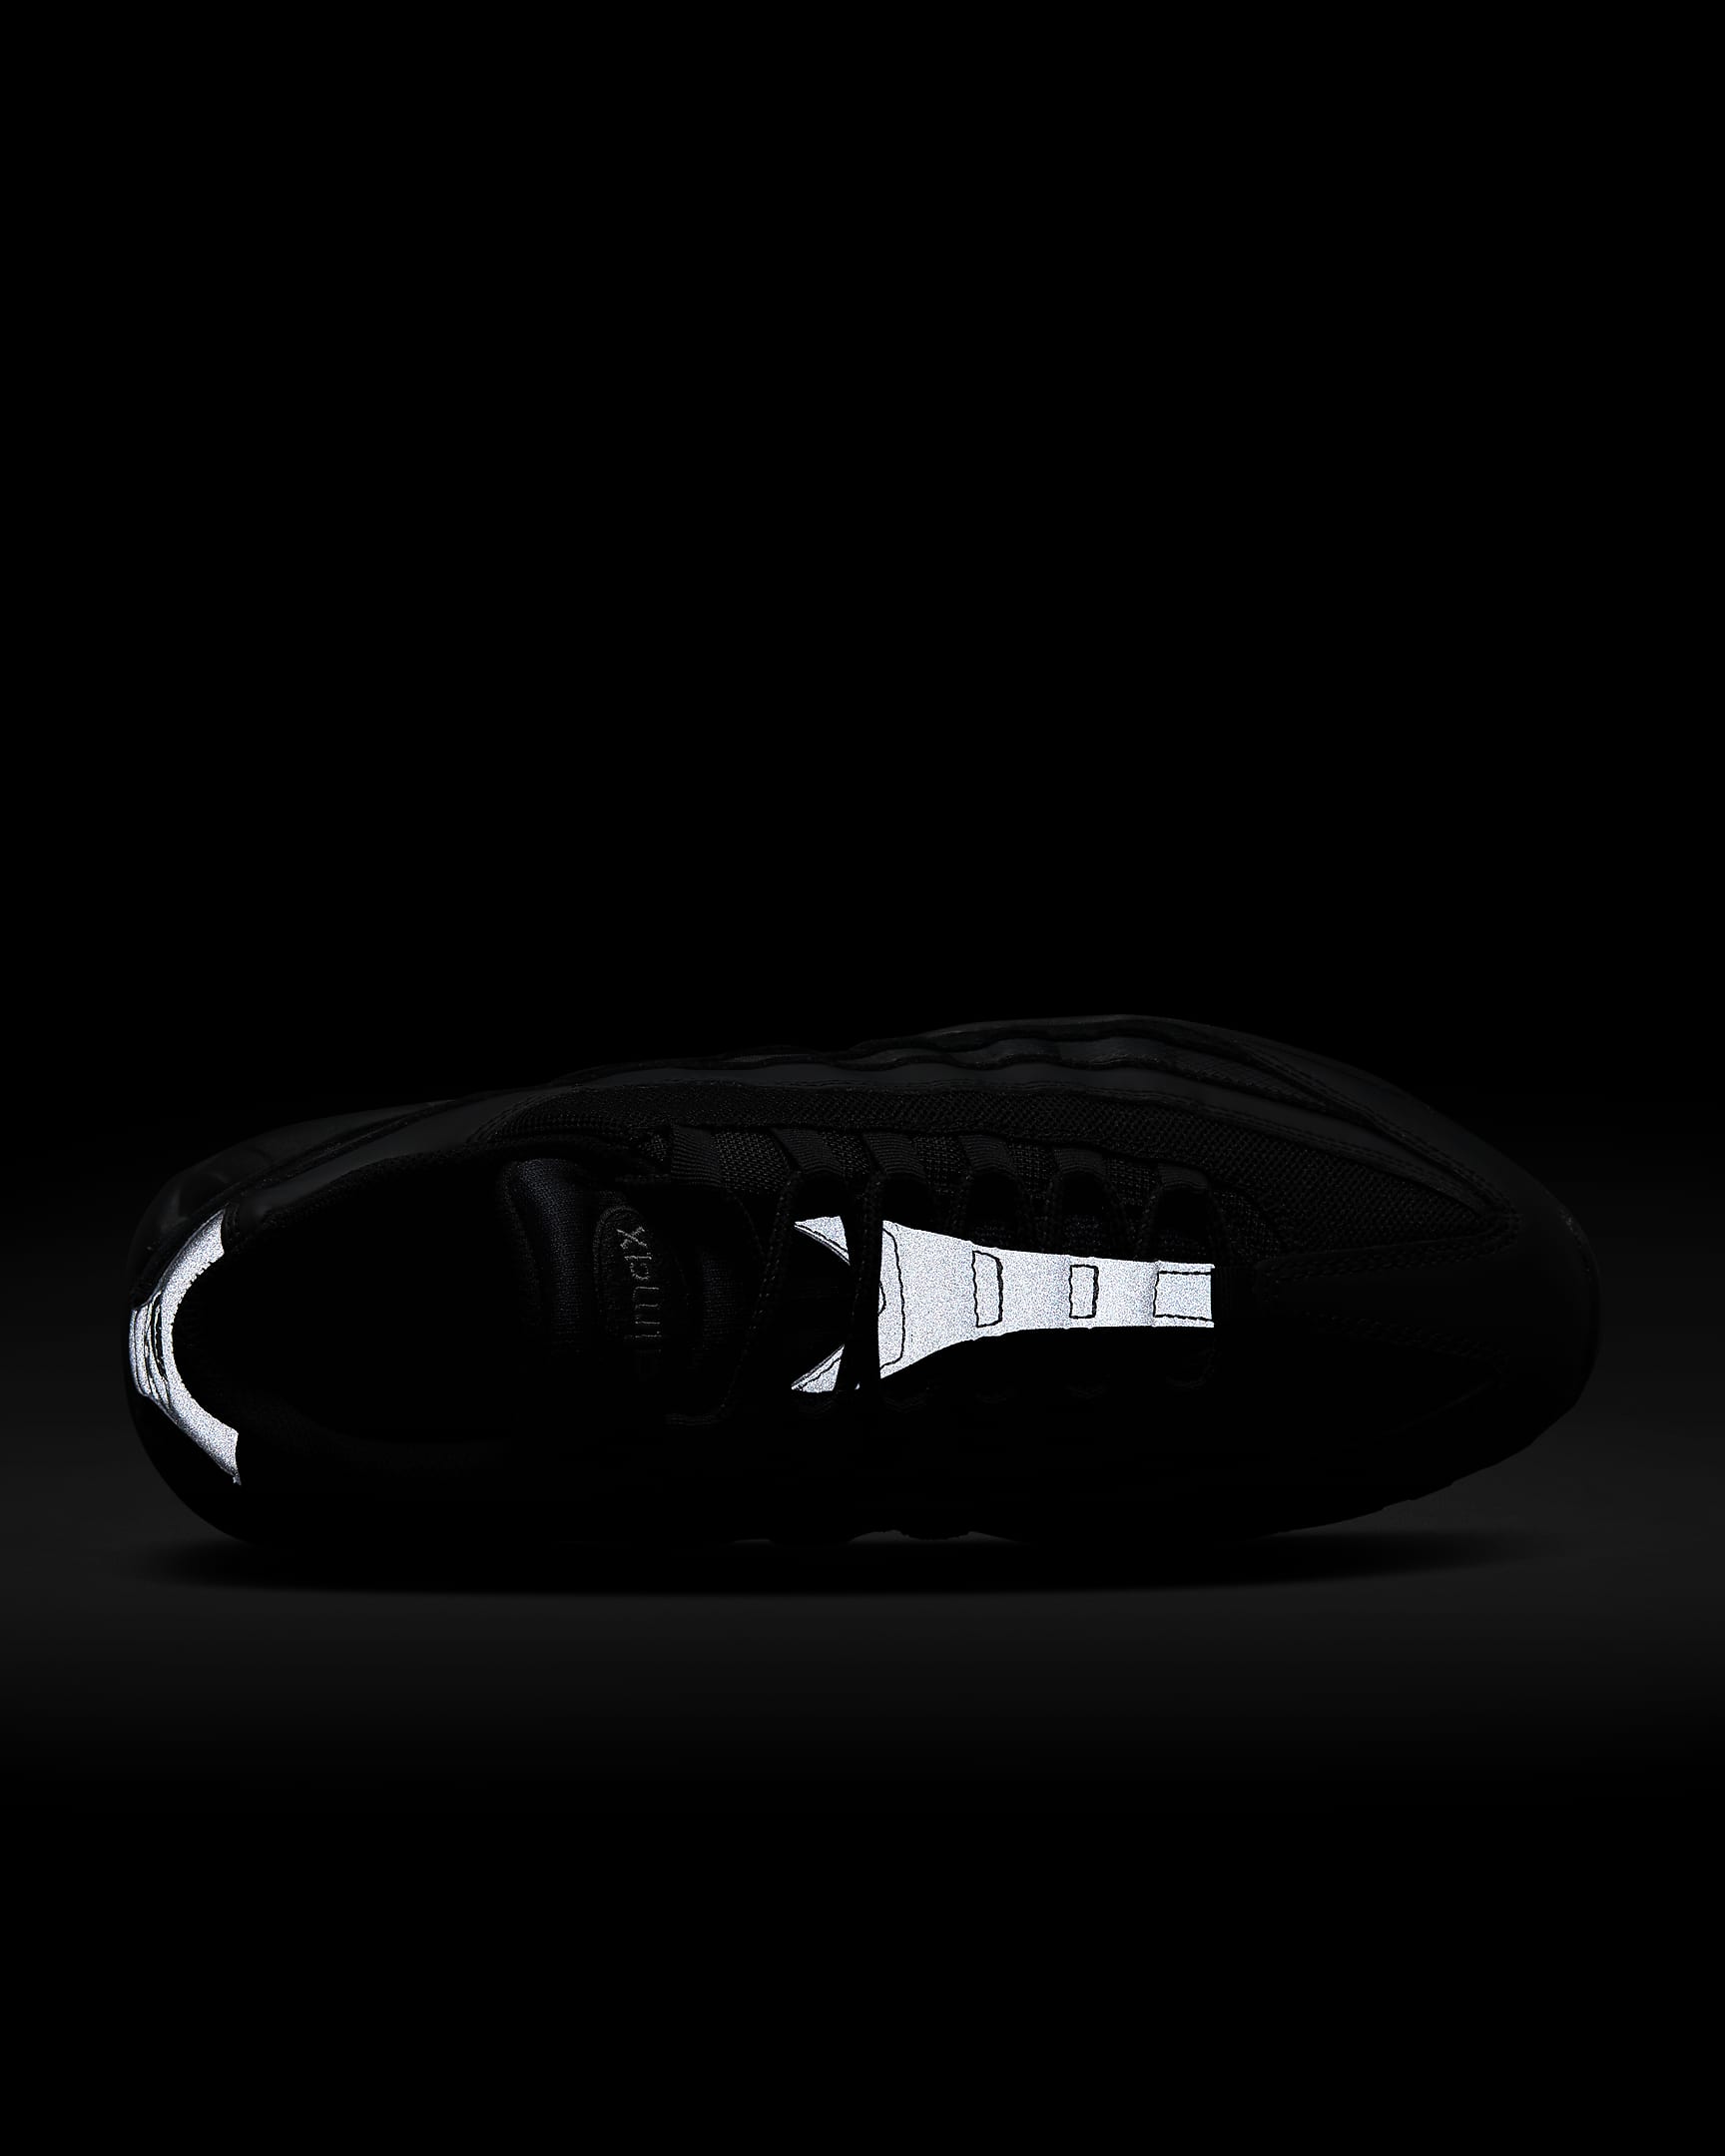 Nike Air Max 95 Essential Herrenschuh - Schwarz/Dark Grey/Schwarz